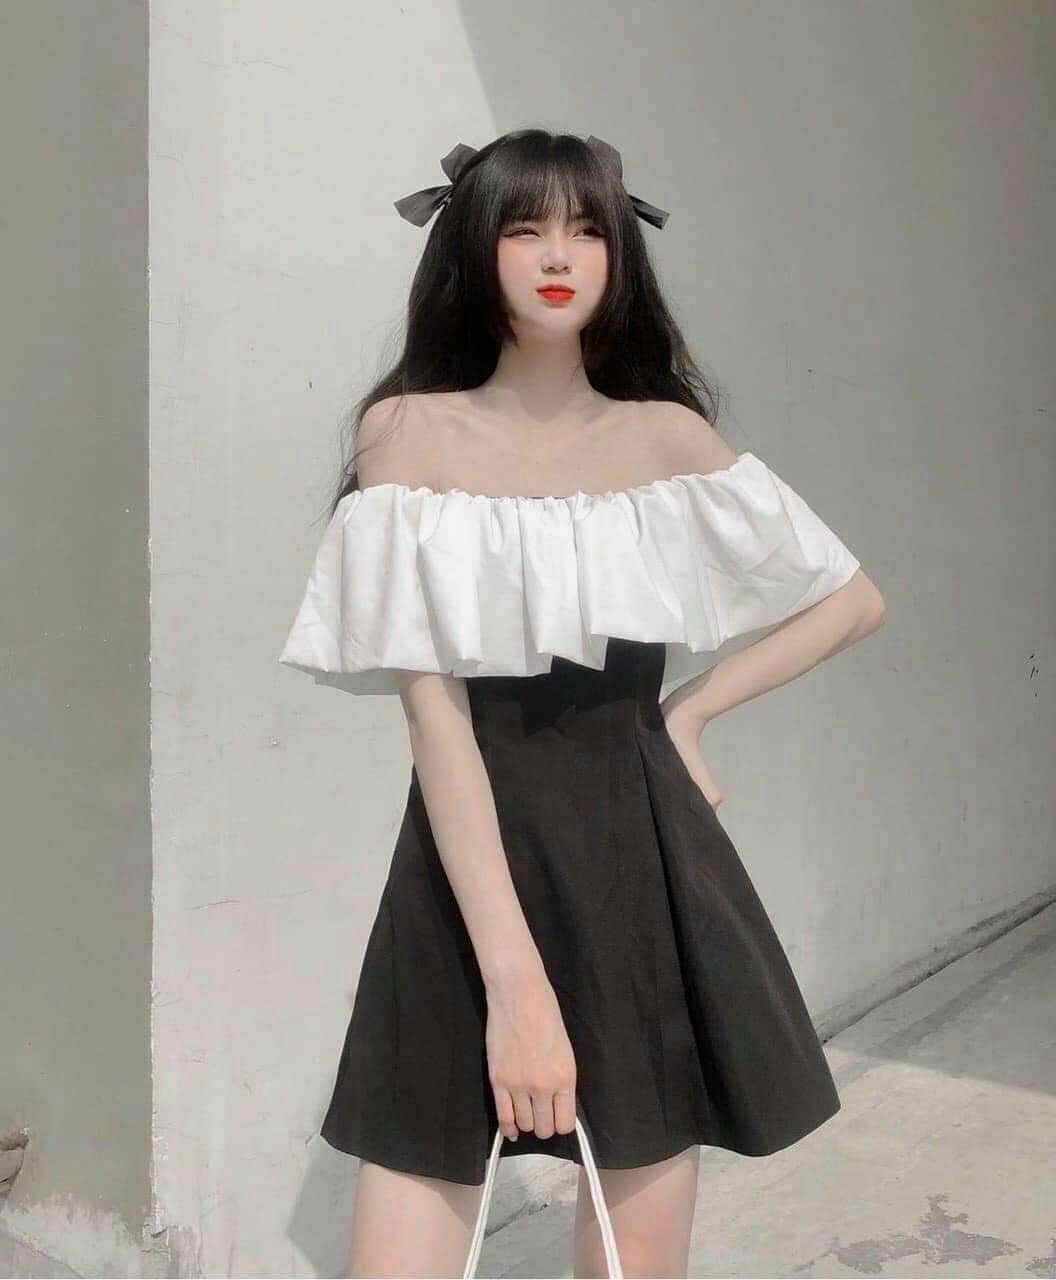 Váy Trễ Vai Nơ Lưng To Mùa Đen Vai Trắng Ulzzang Hàn Quốc Đầm Nữ Bánh Bèo   Shopee Việt Nam